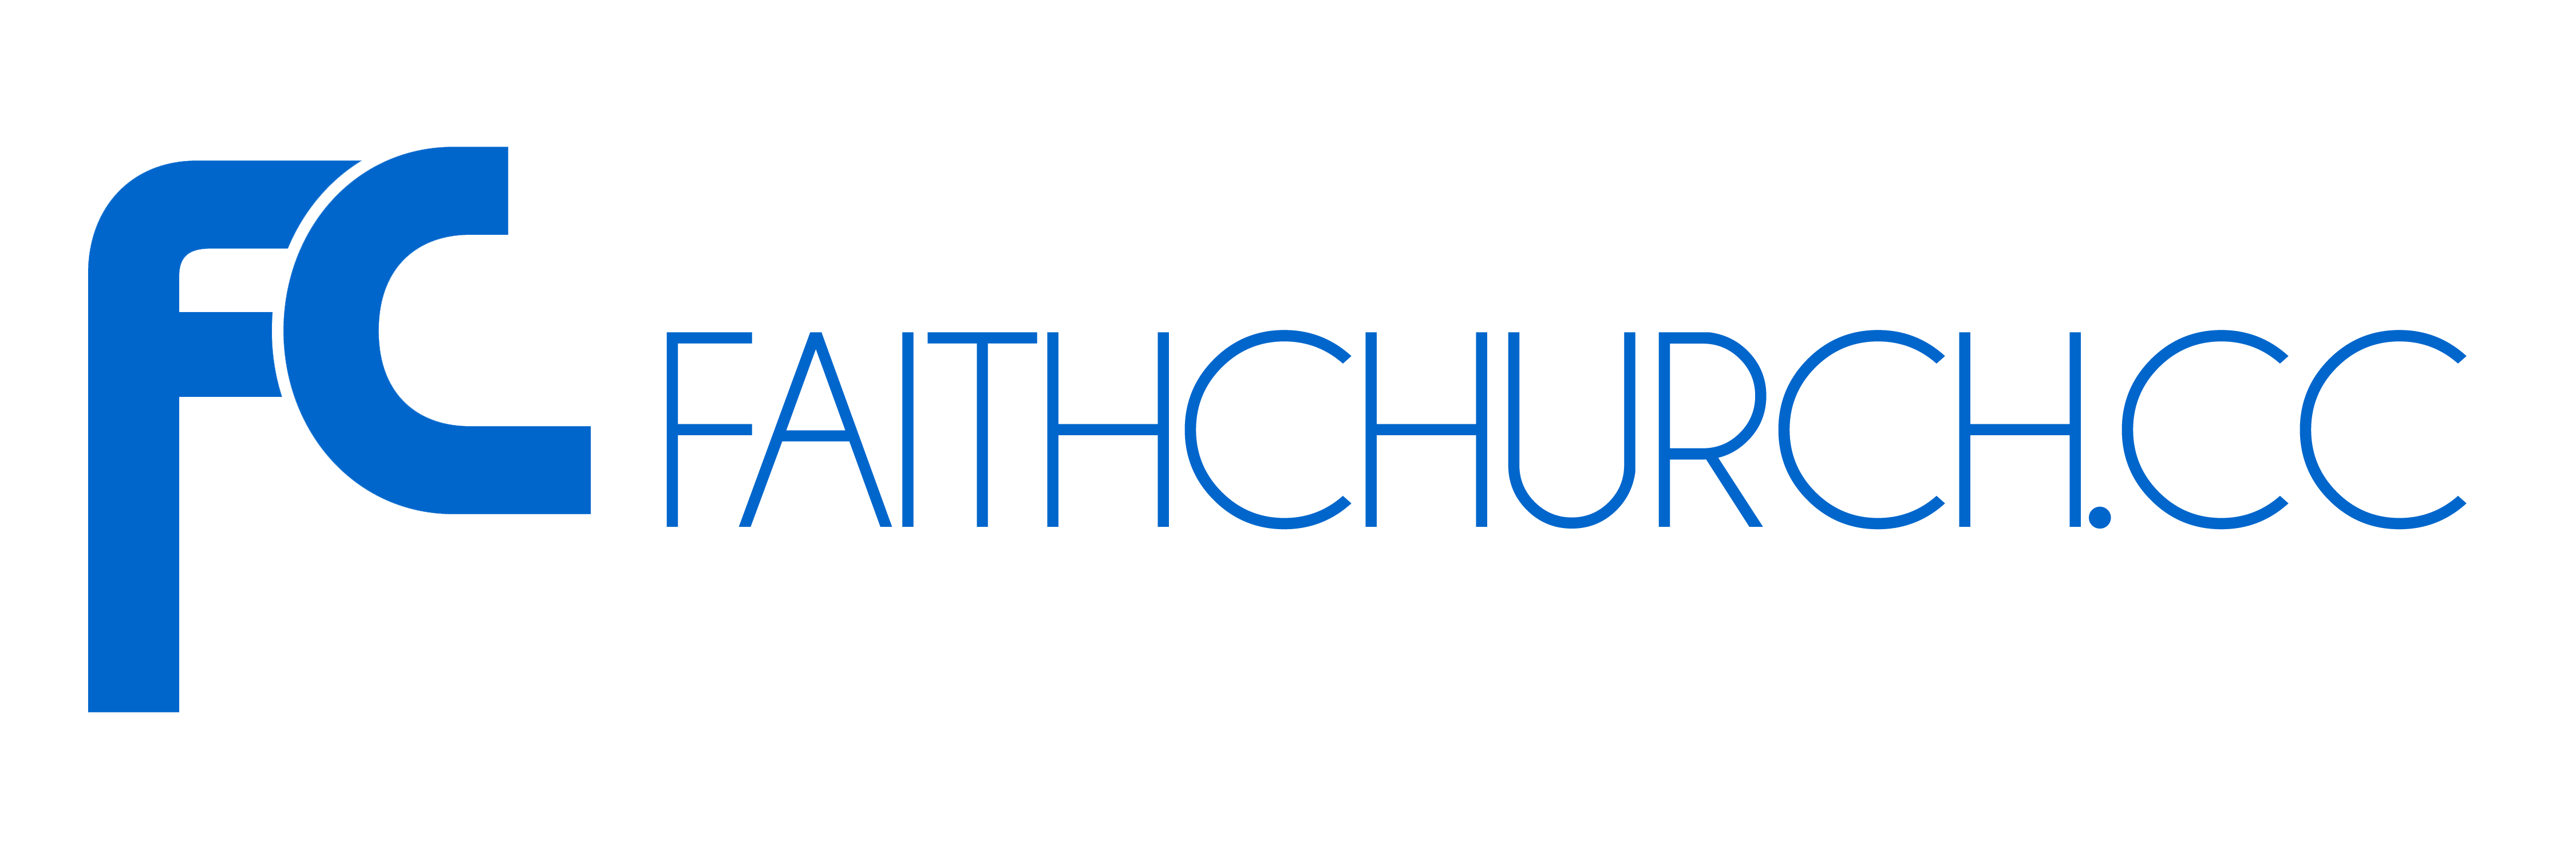 Faith Church logo